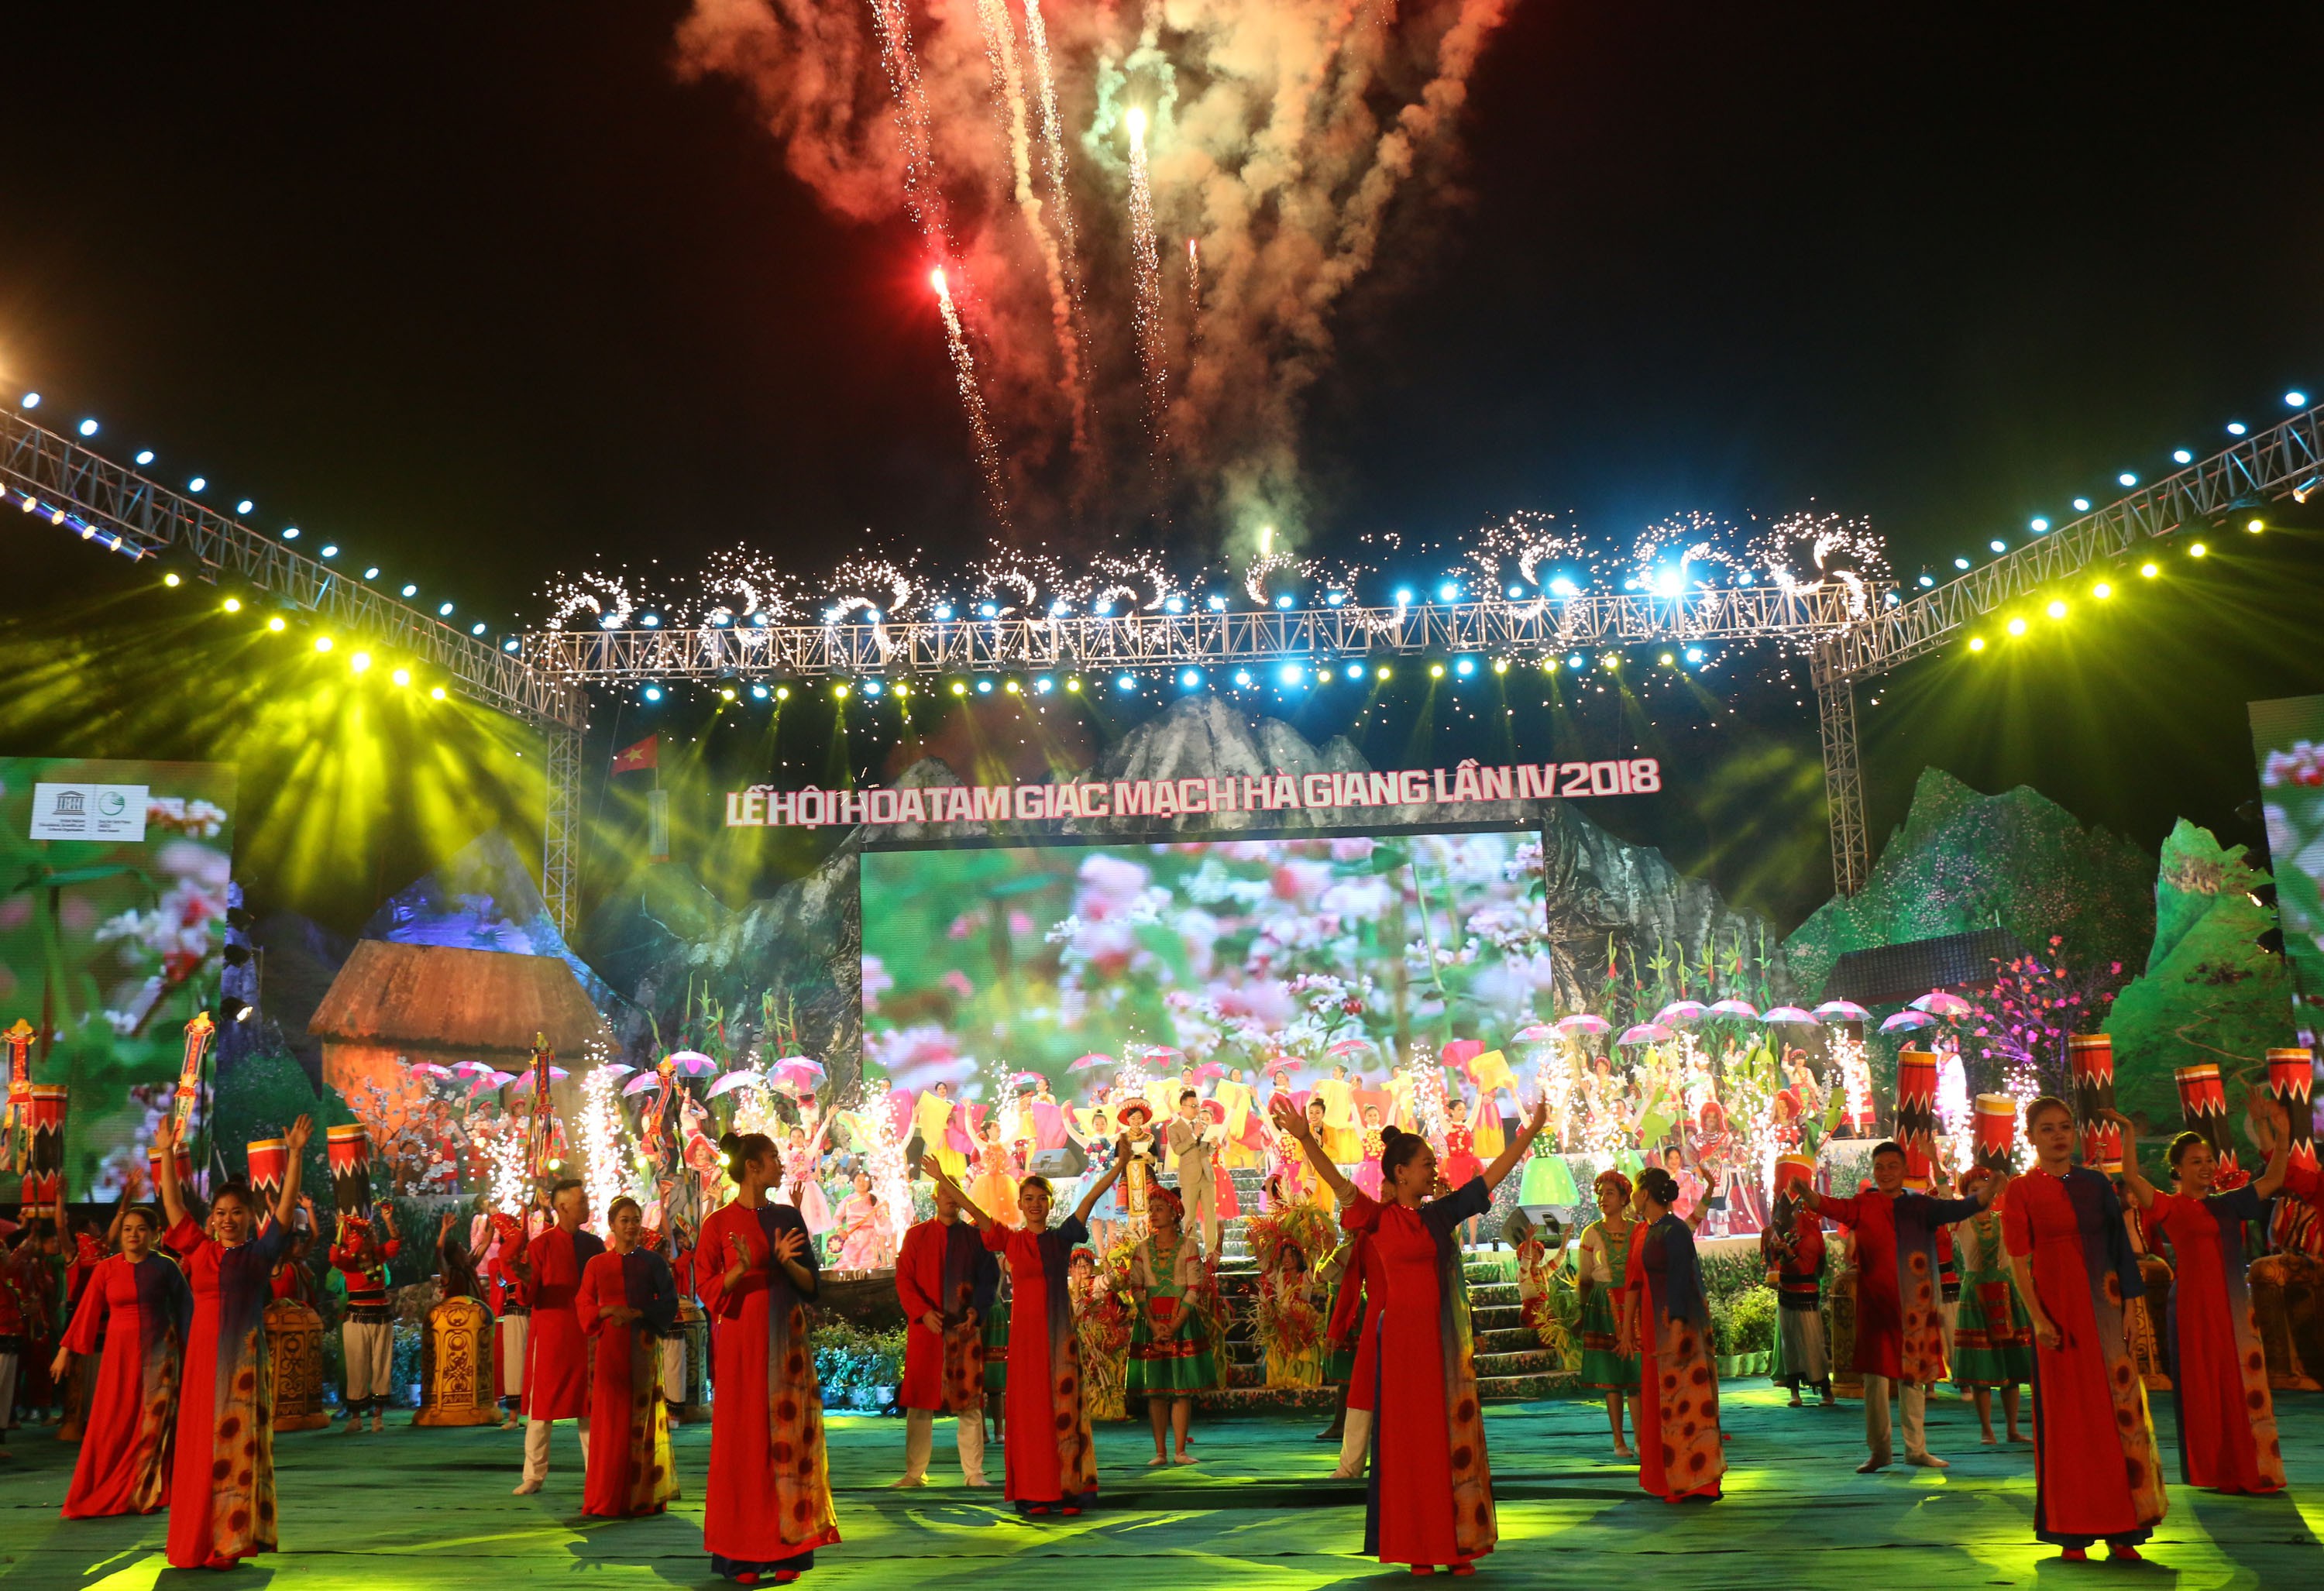 Lễ hội trong năm luôn được tổ chức đa dạng theo chủ đề